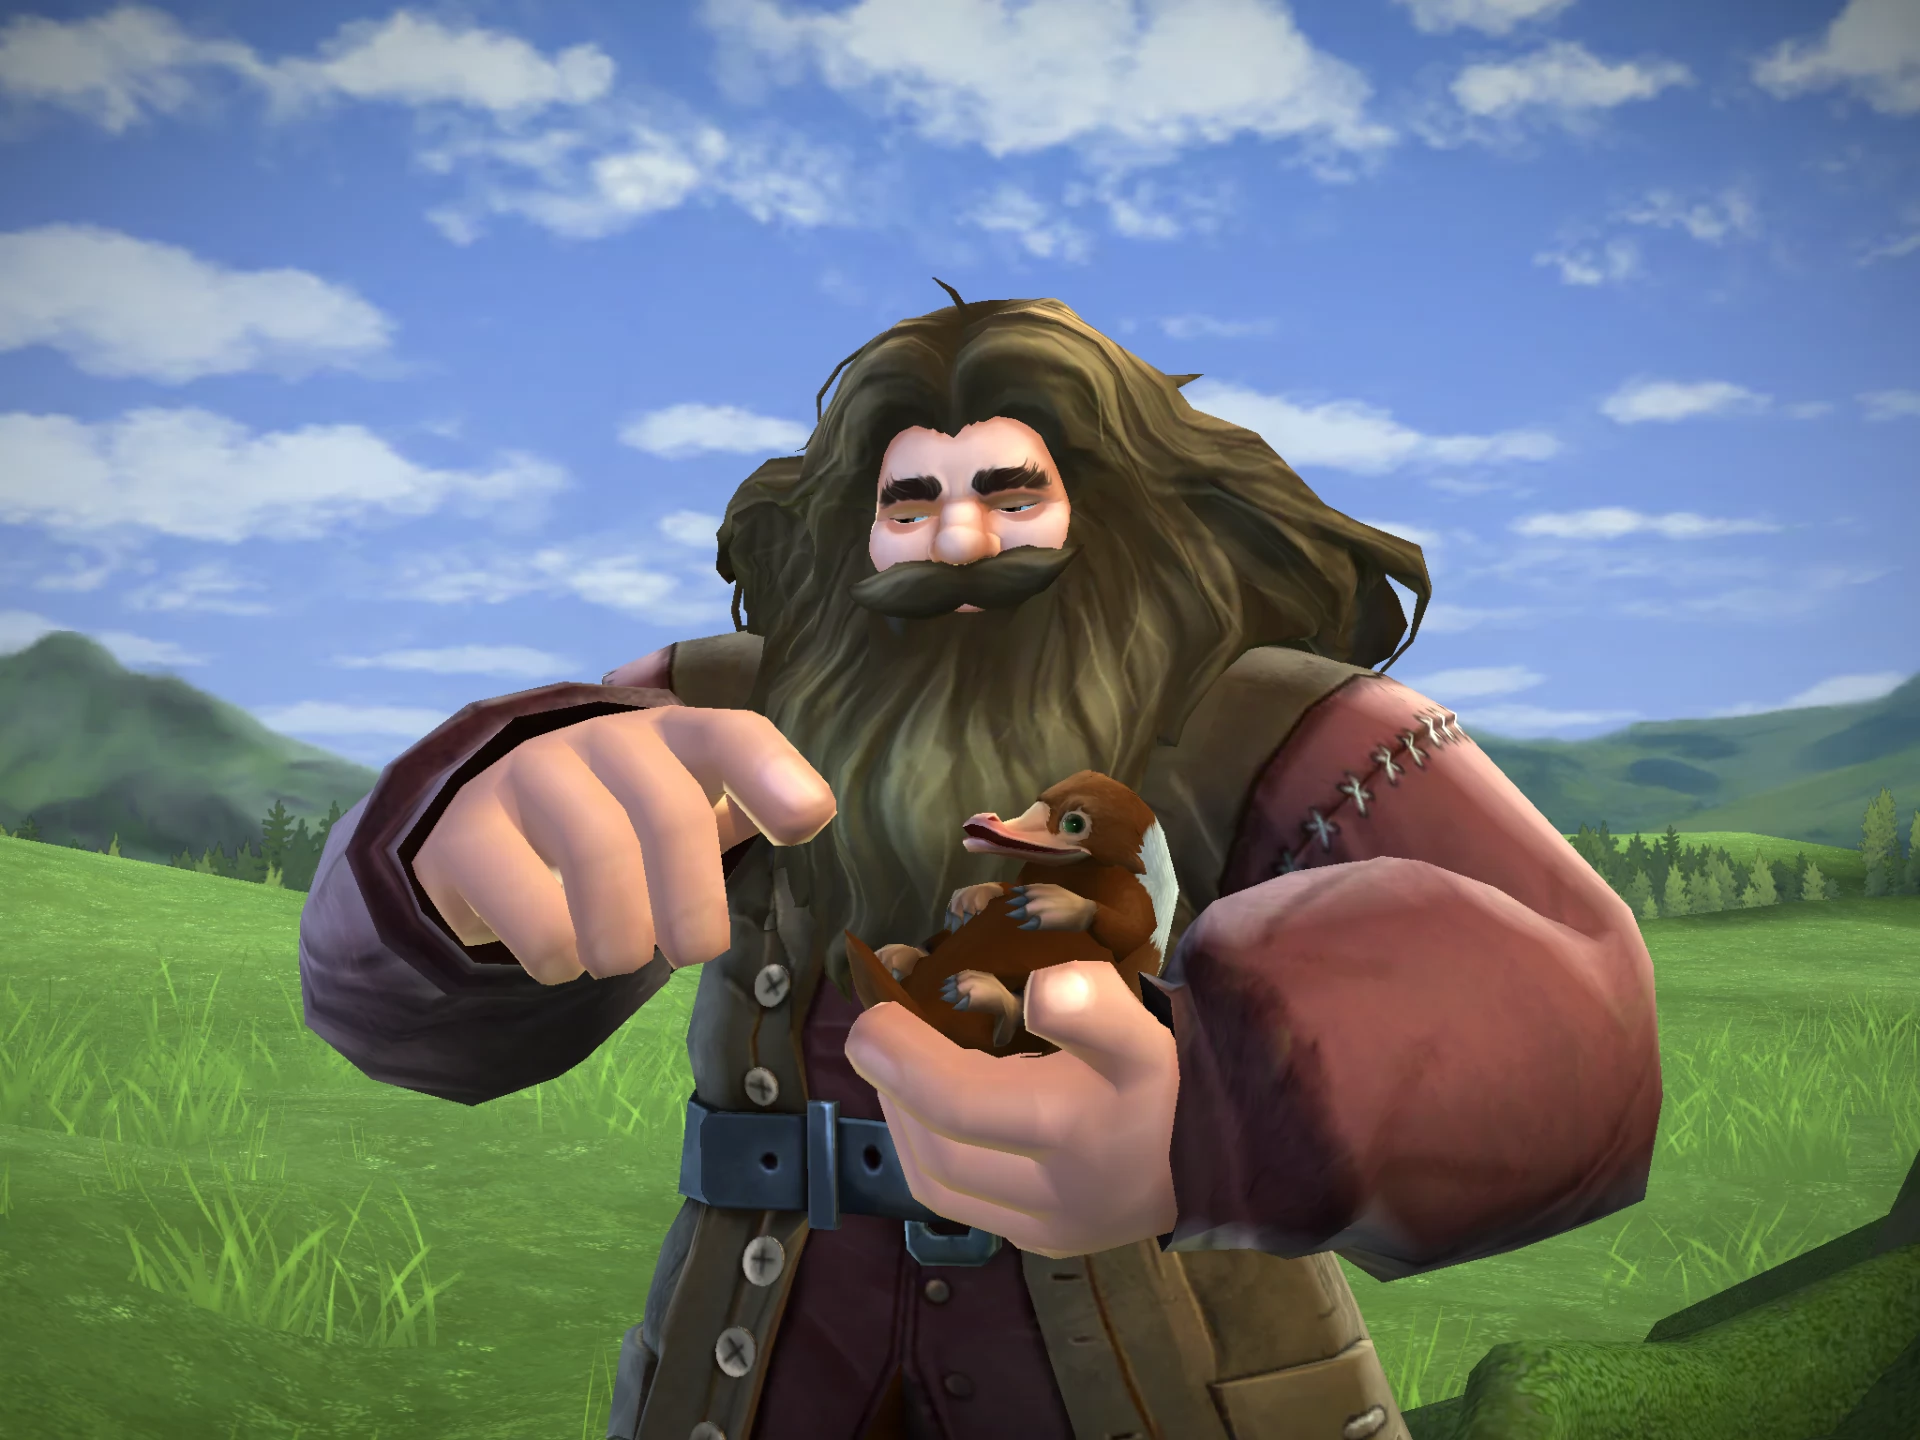 Hagrid's Quest Answers - HOGWARTS MYSTERY WALKTHROUGH